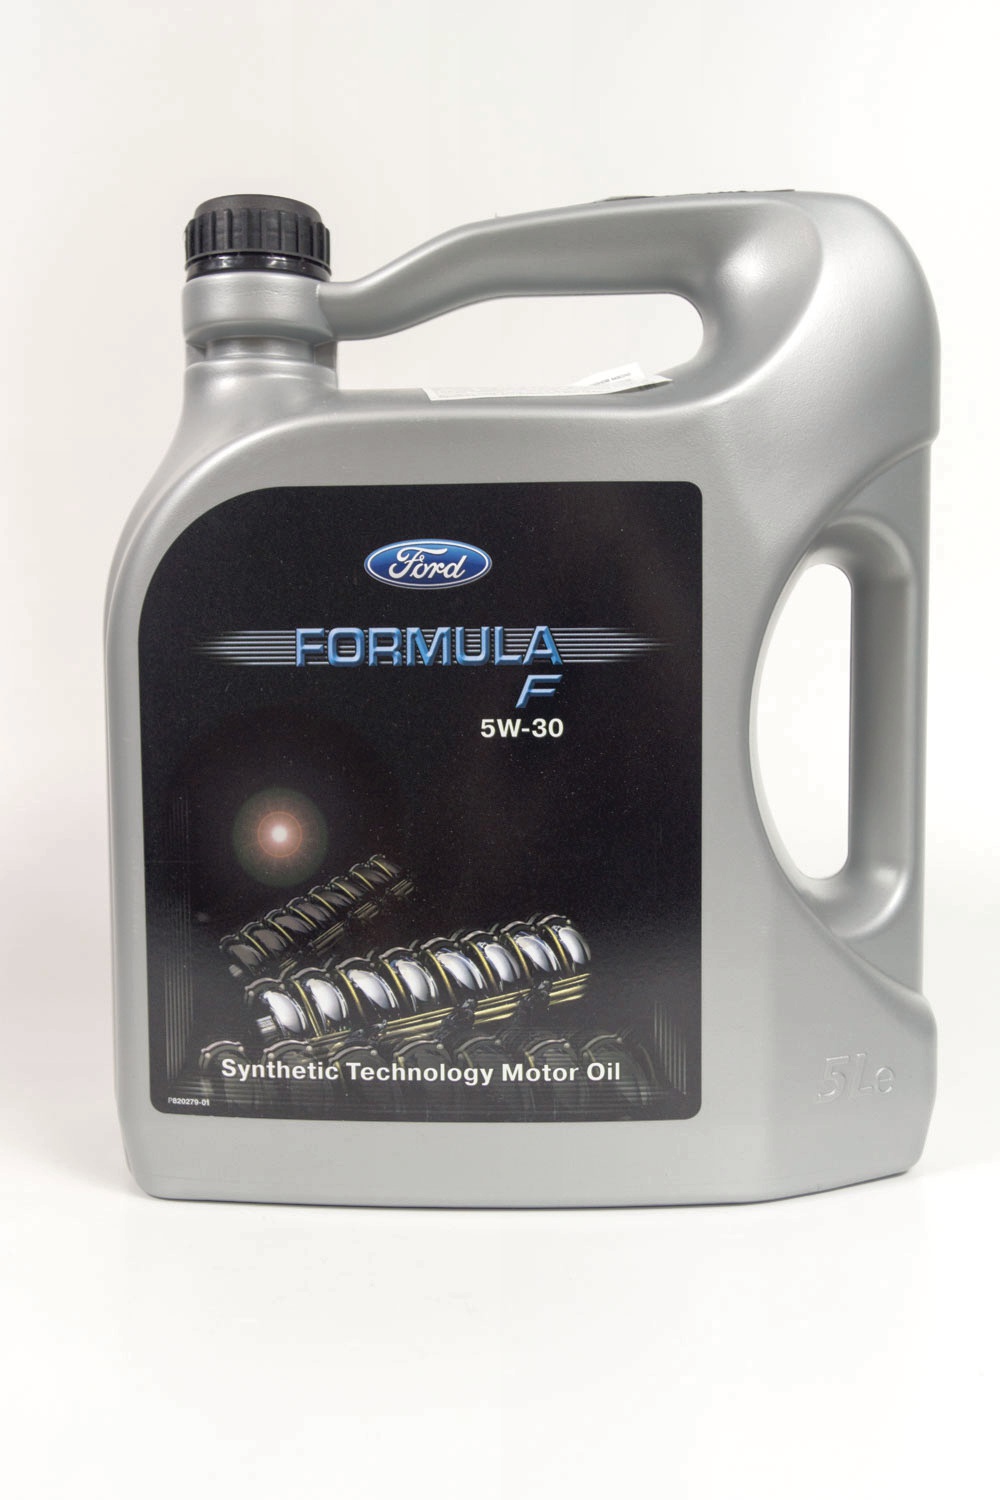 Рекомендованные масла для Ford Focus 2 и замена масла в двигателе без подъемника